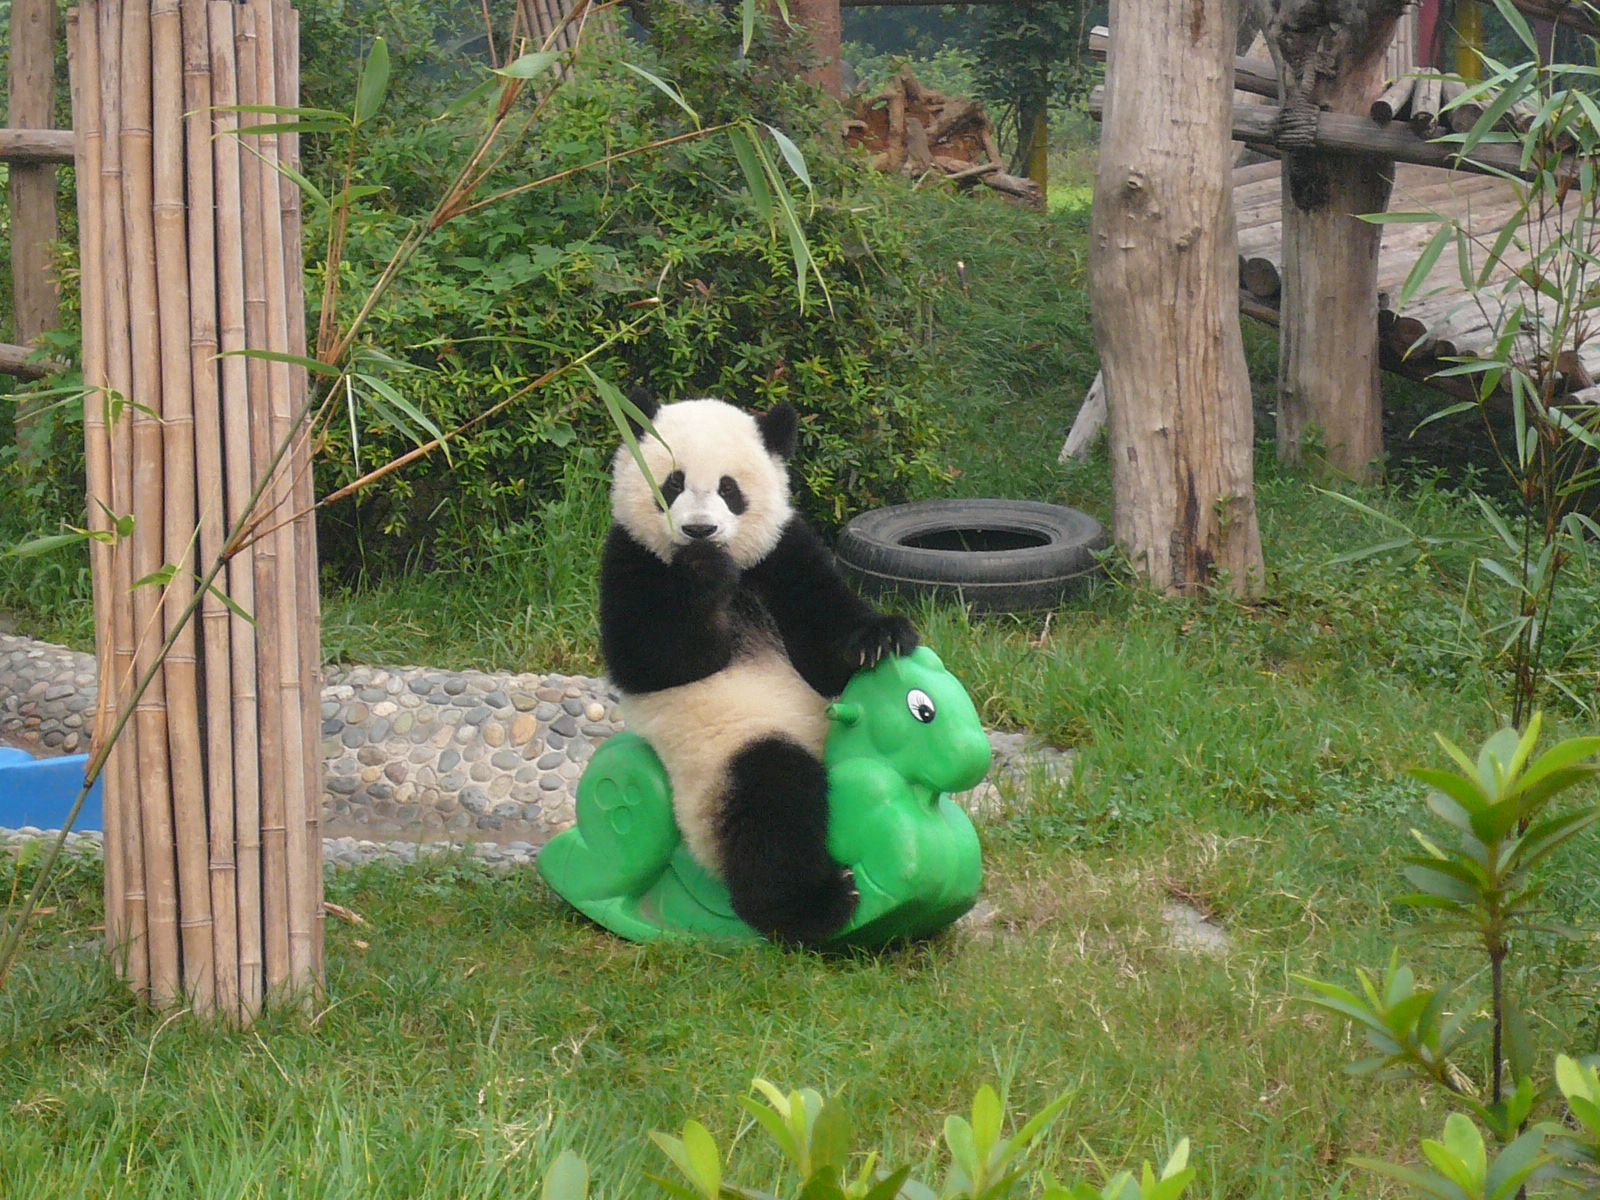 Imagenes de Pandas + Sabias que los Pandas tienen 6 Dedos | Panda ...